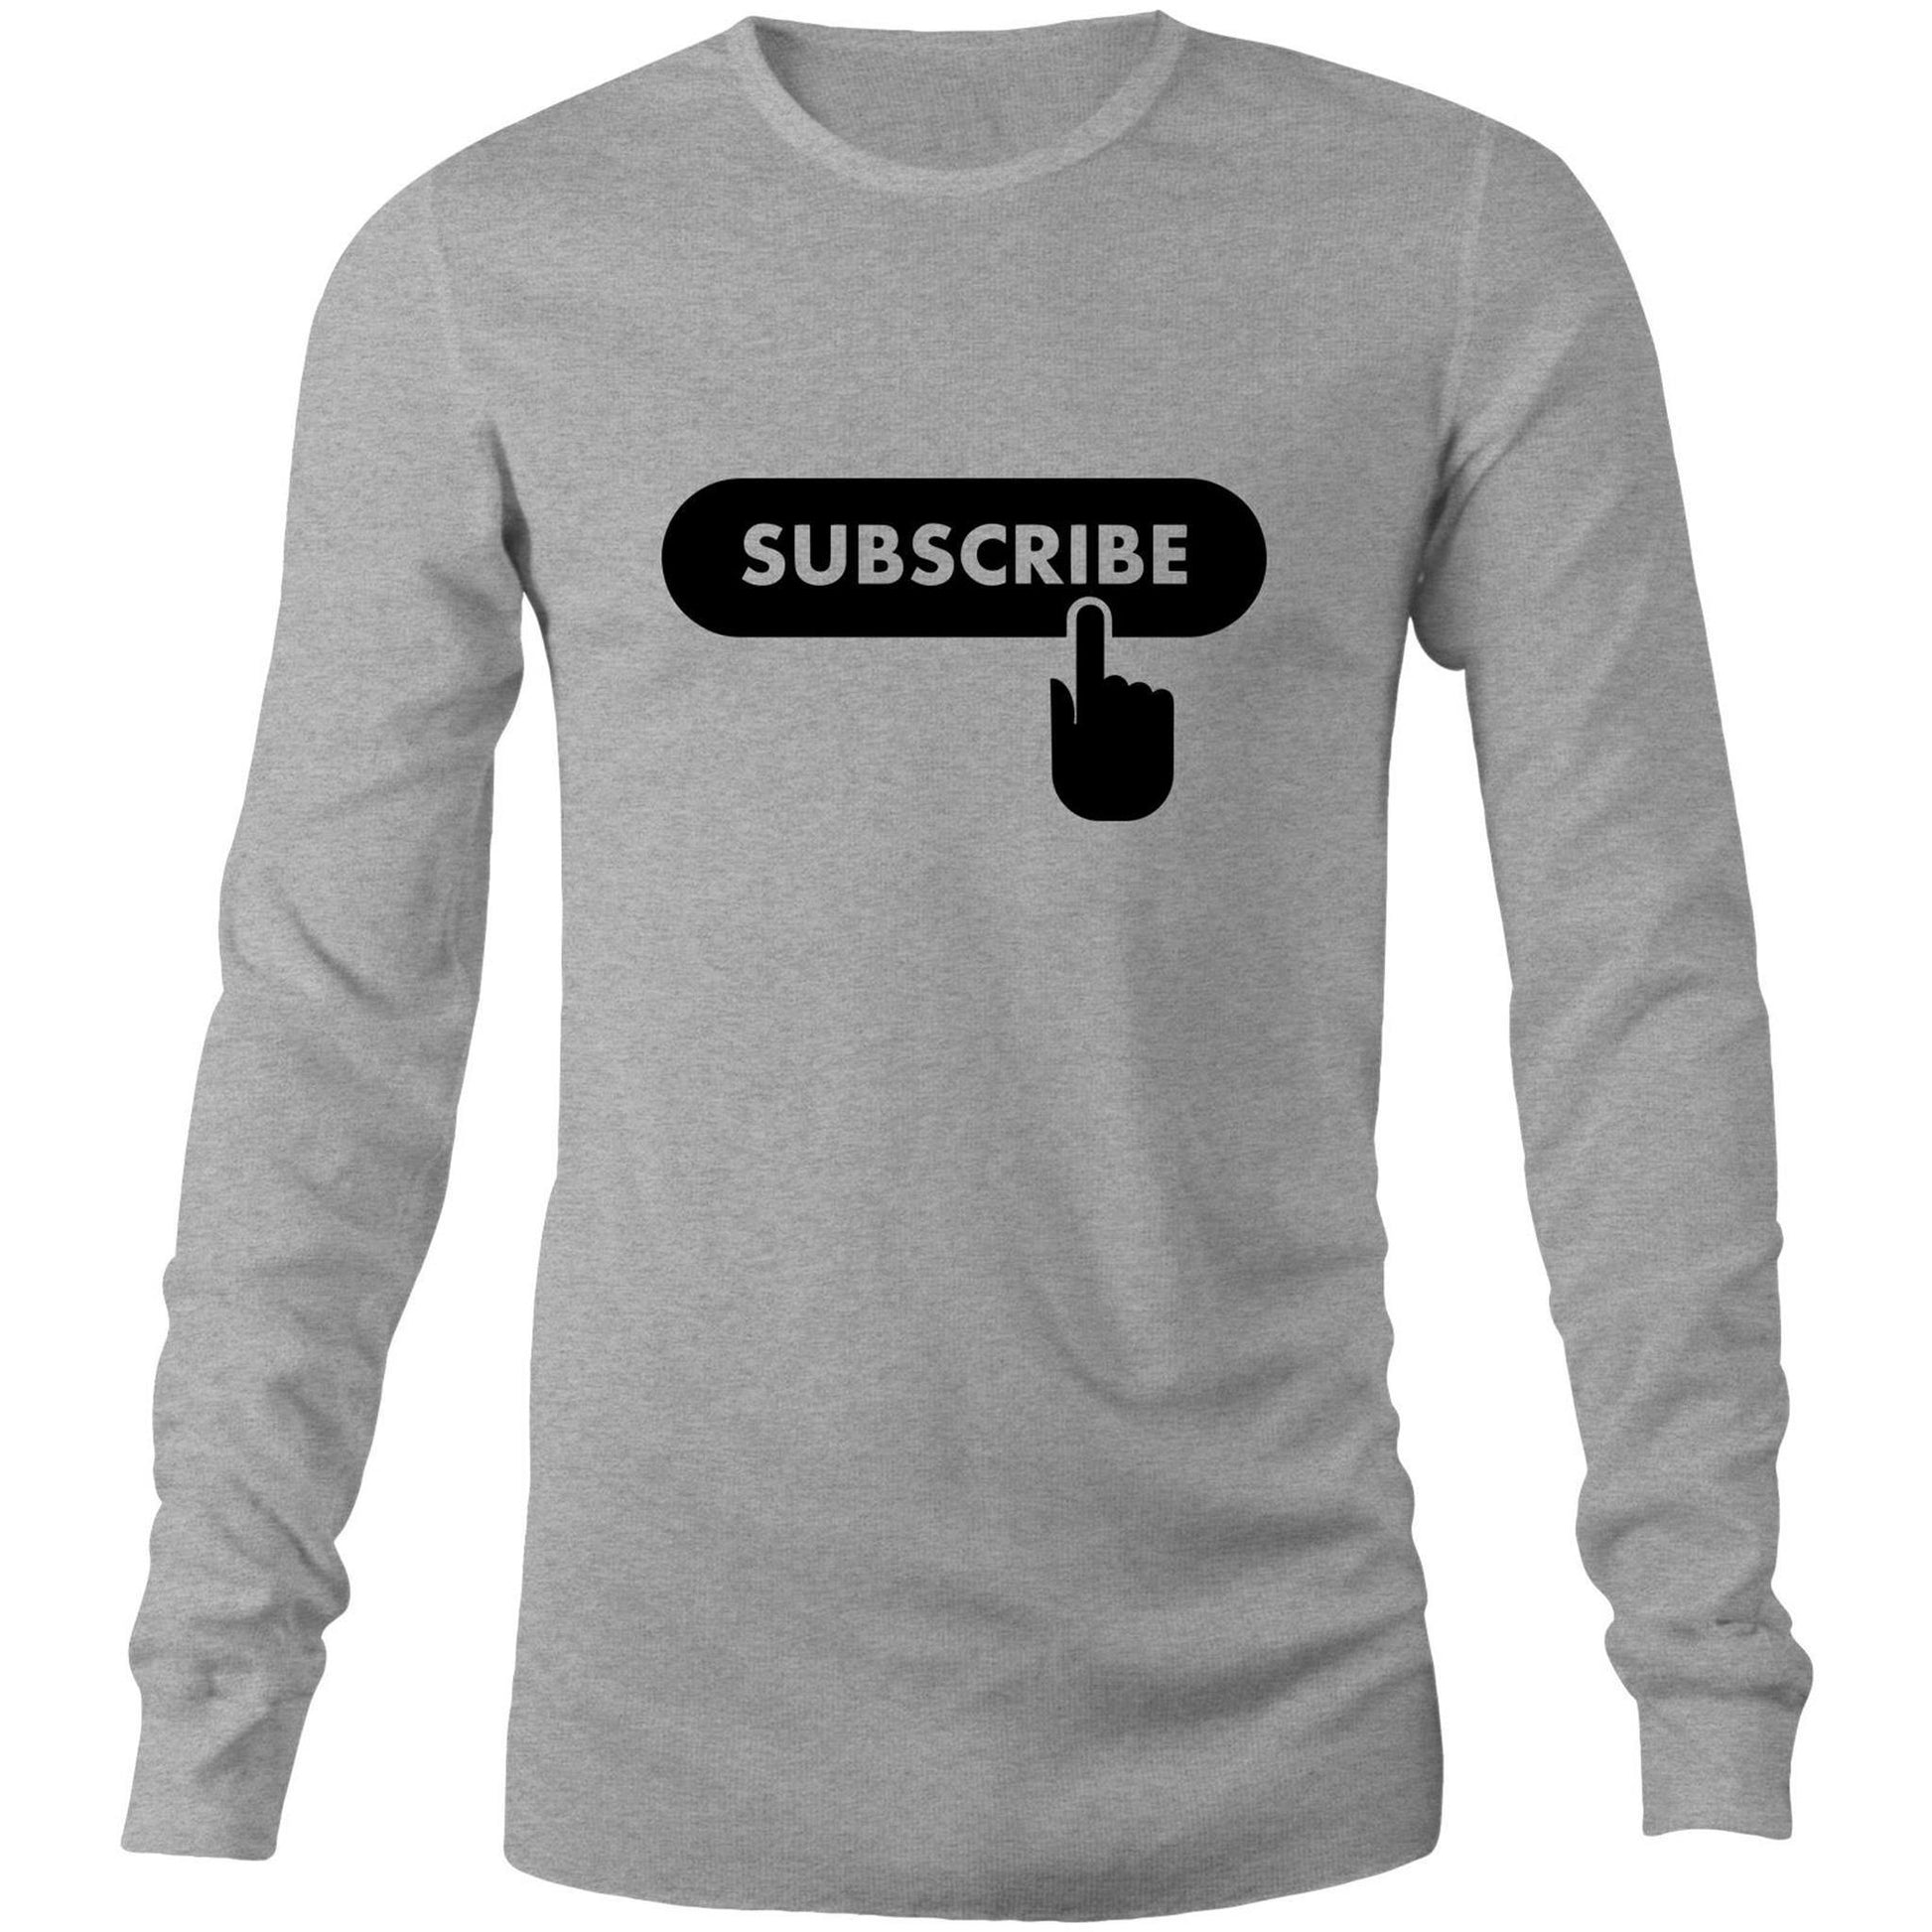 Subscribe - Long Sleeve T-Shirt Grey Marle Unisex Long Sleeve T-shirt Mens Womens